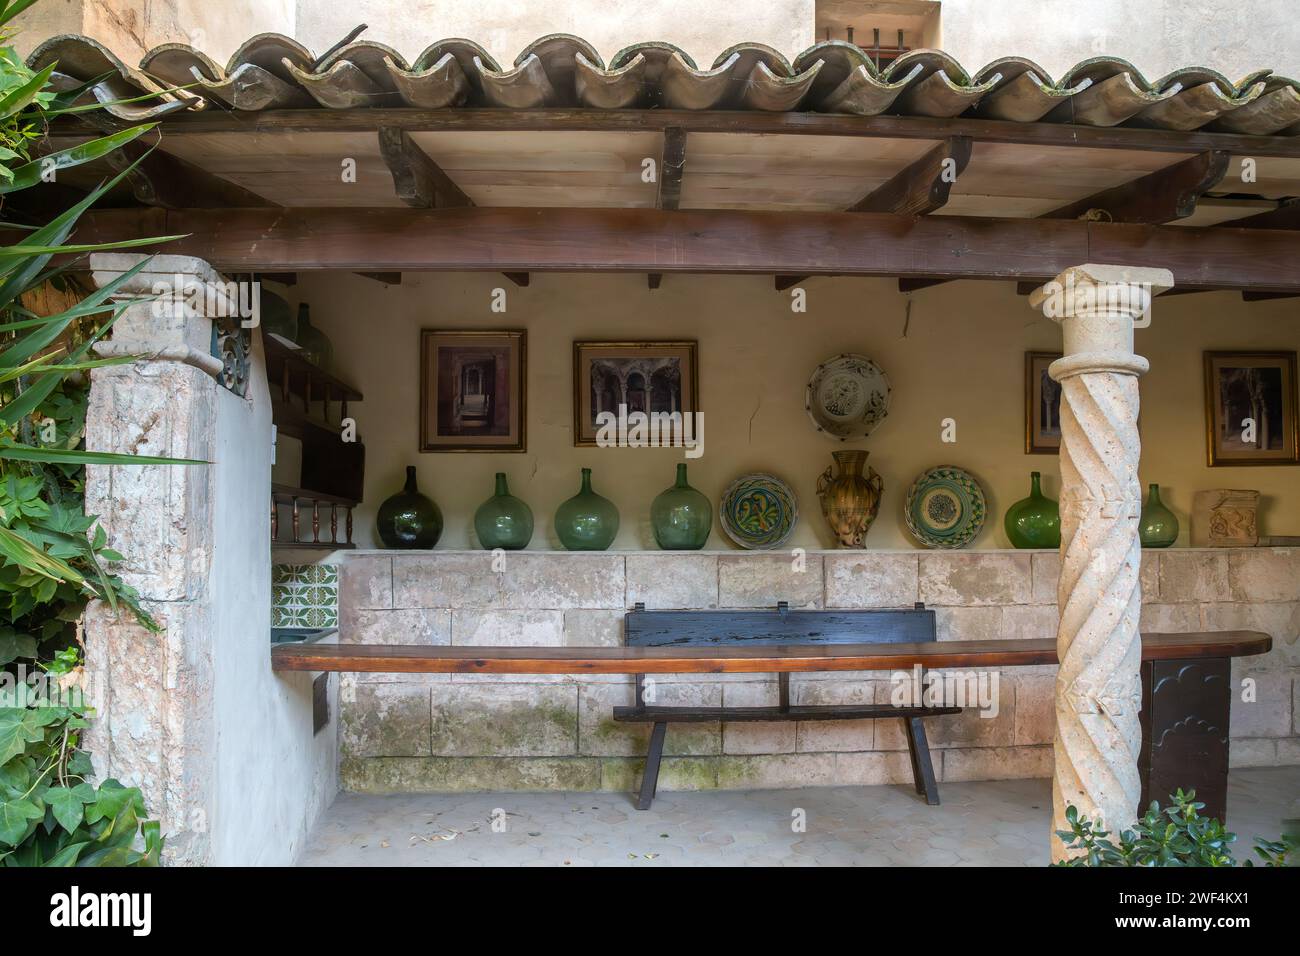 Oggetti decorativi presso le Terme arabe di Palma di Maiorca, Spagna, situati nei giardini di CAN Fontirroig. Foto Stock